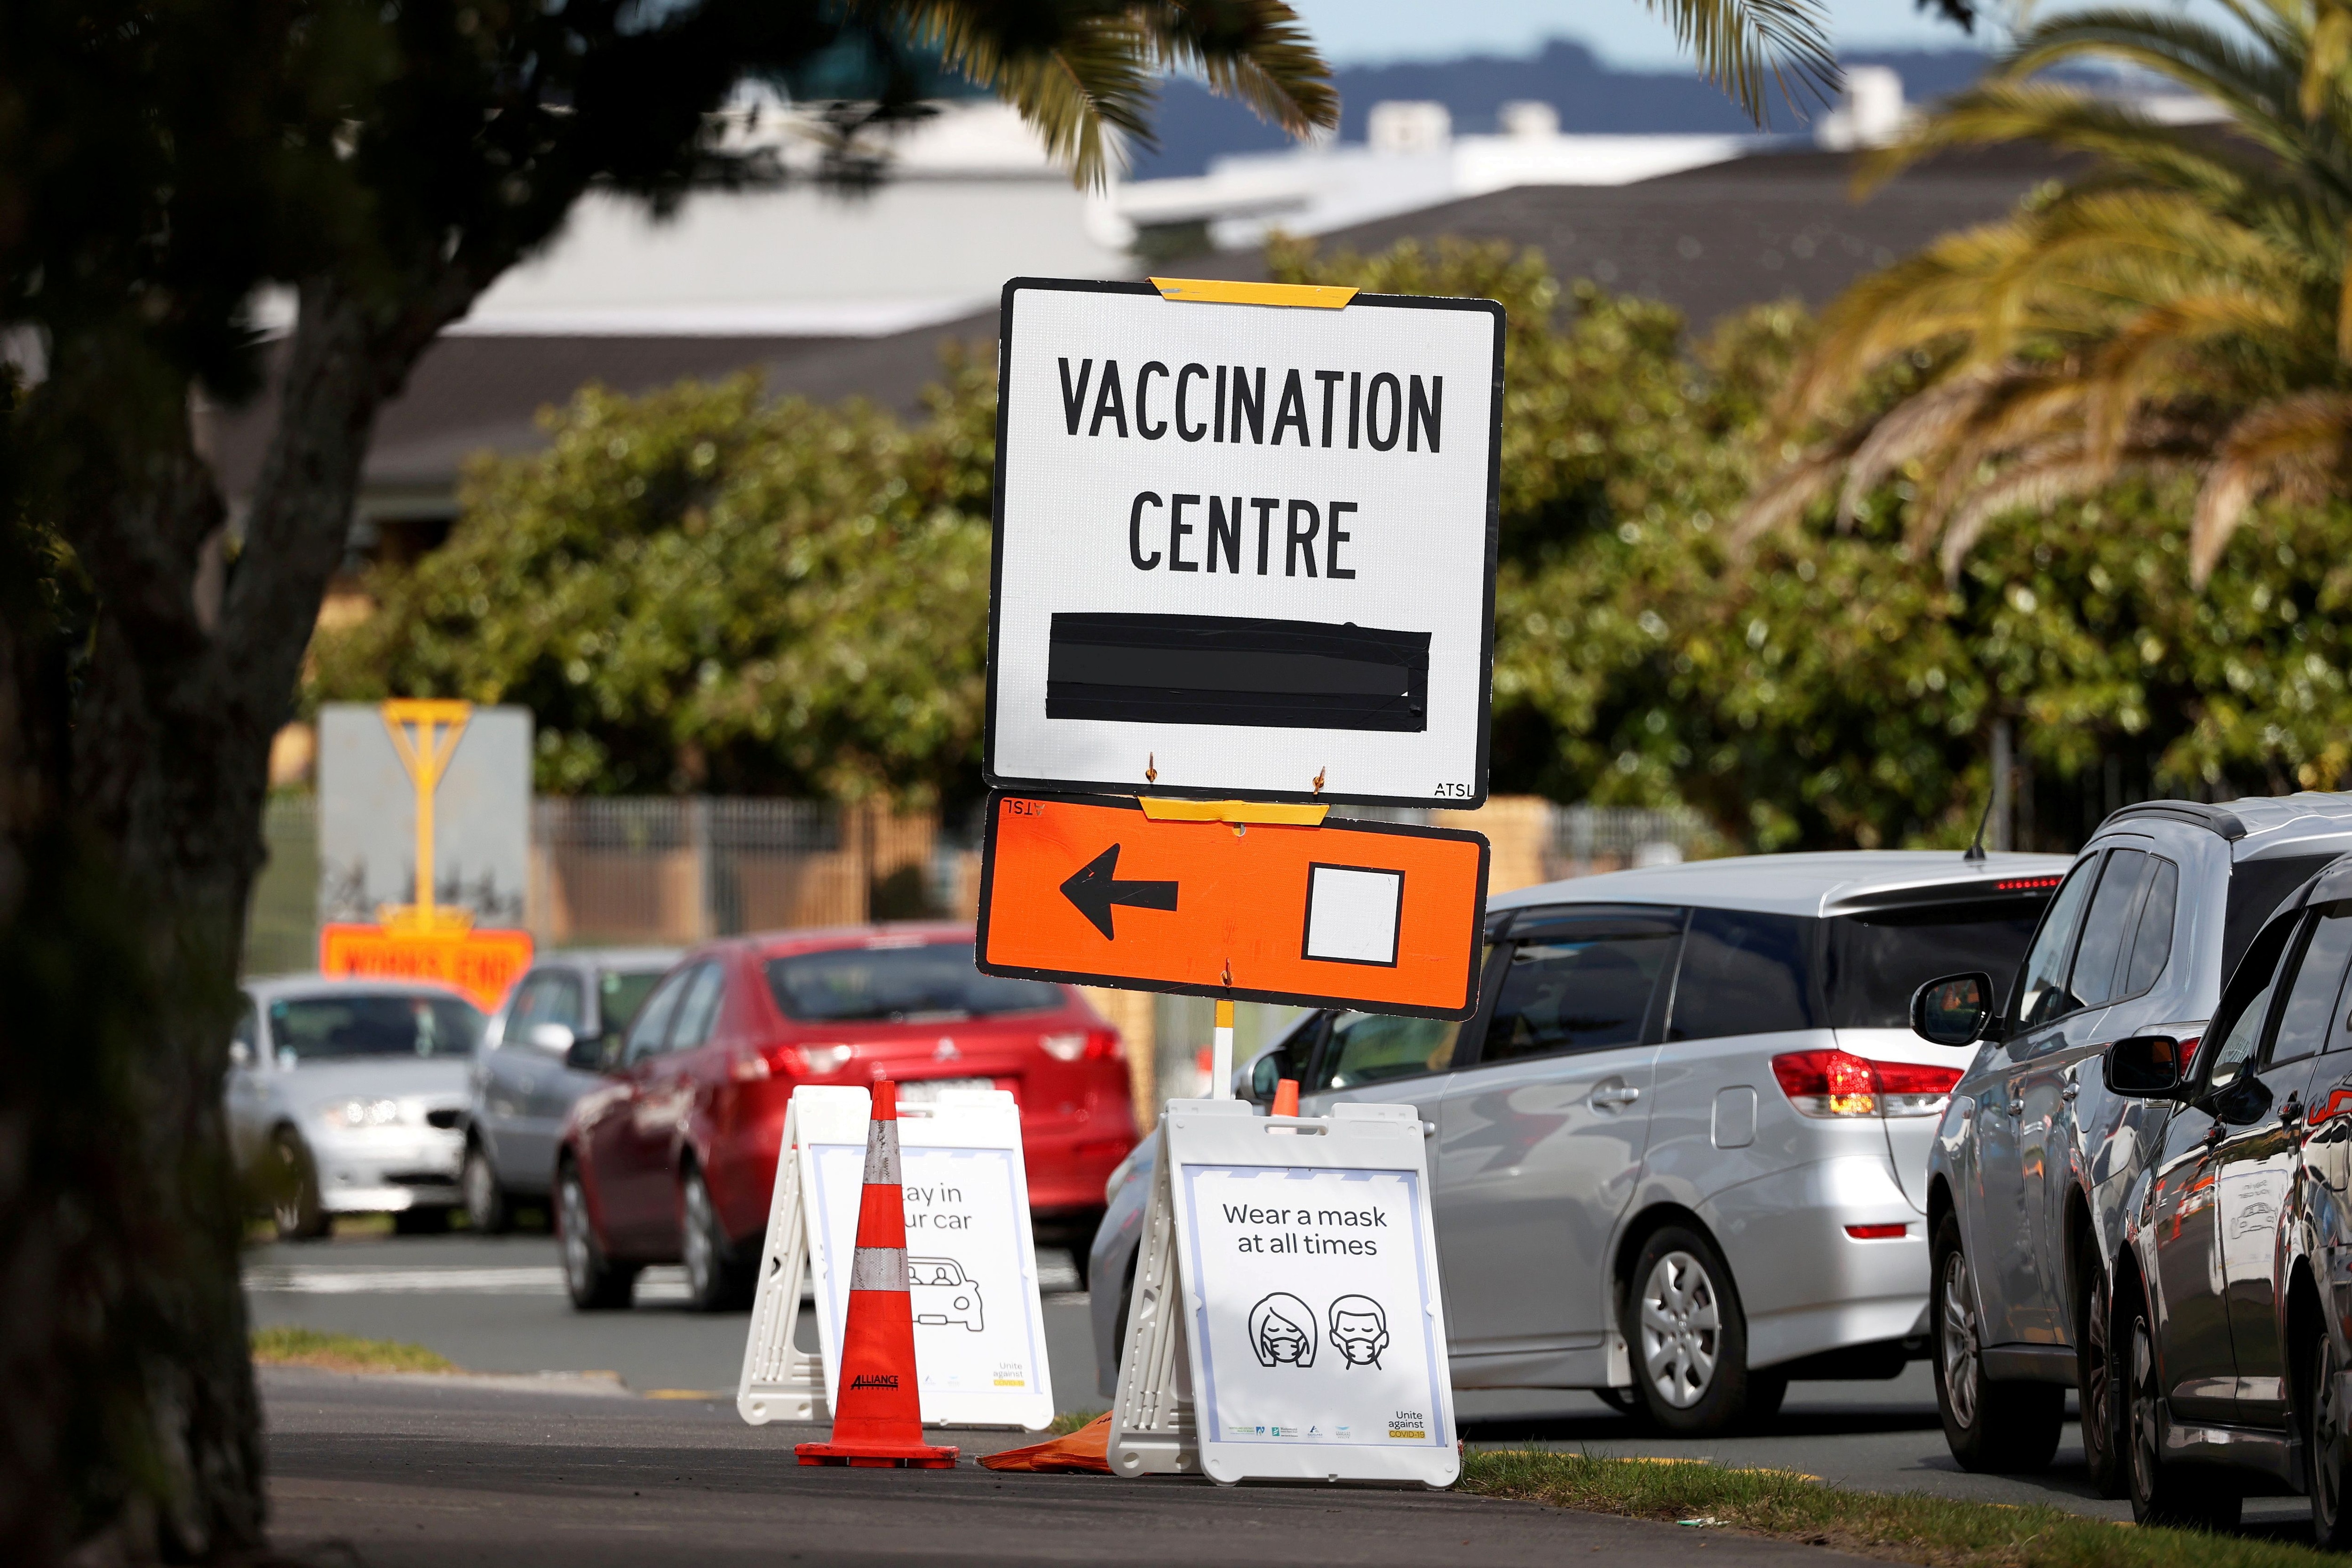 FOTO DE ARCHIVO: Un cartel de un centro de vacunación en Auckland, Nueva Zelanda, el 26 de agosto de 2021. REUTERS/Fiona Goodall